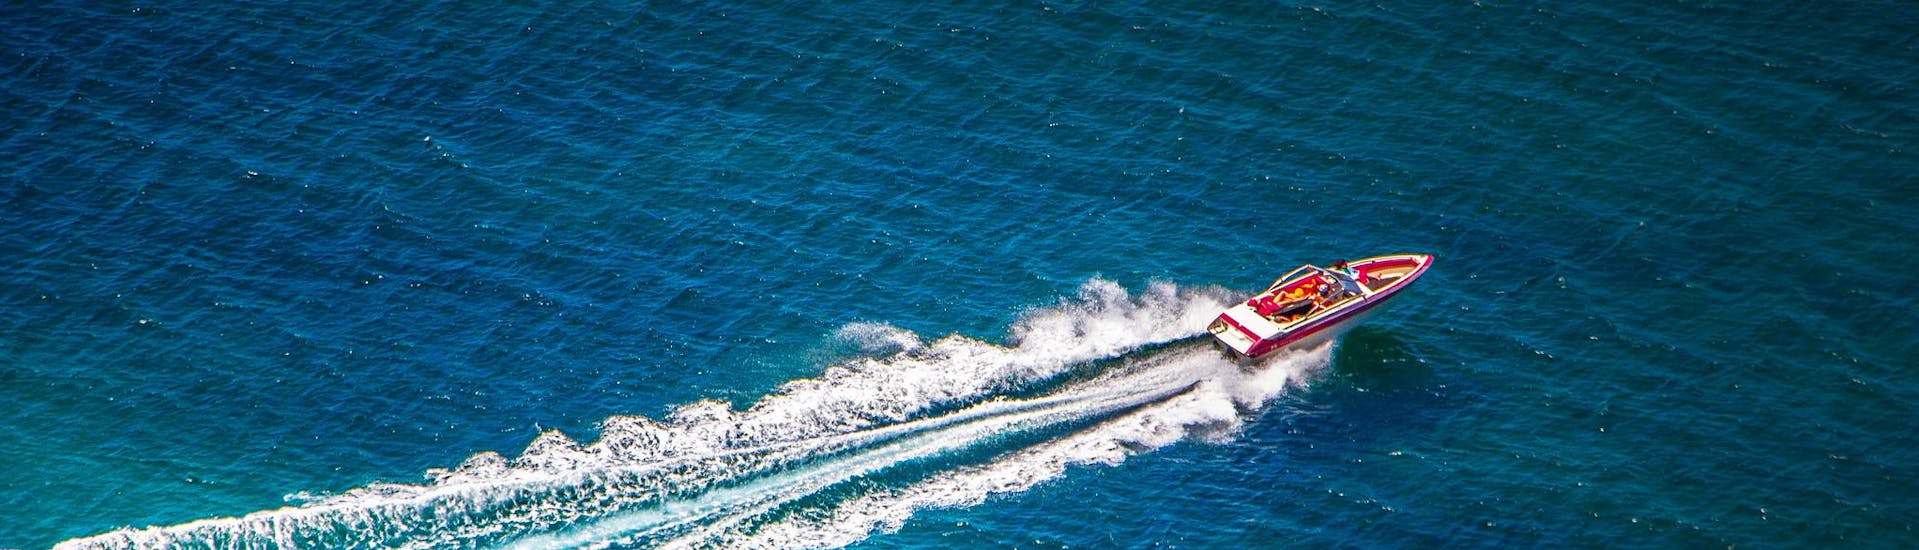 Een speedboot die snel vaart tijdens een tocht.